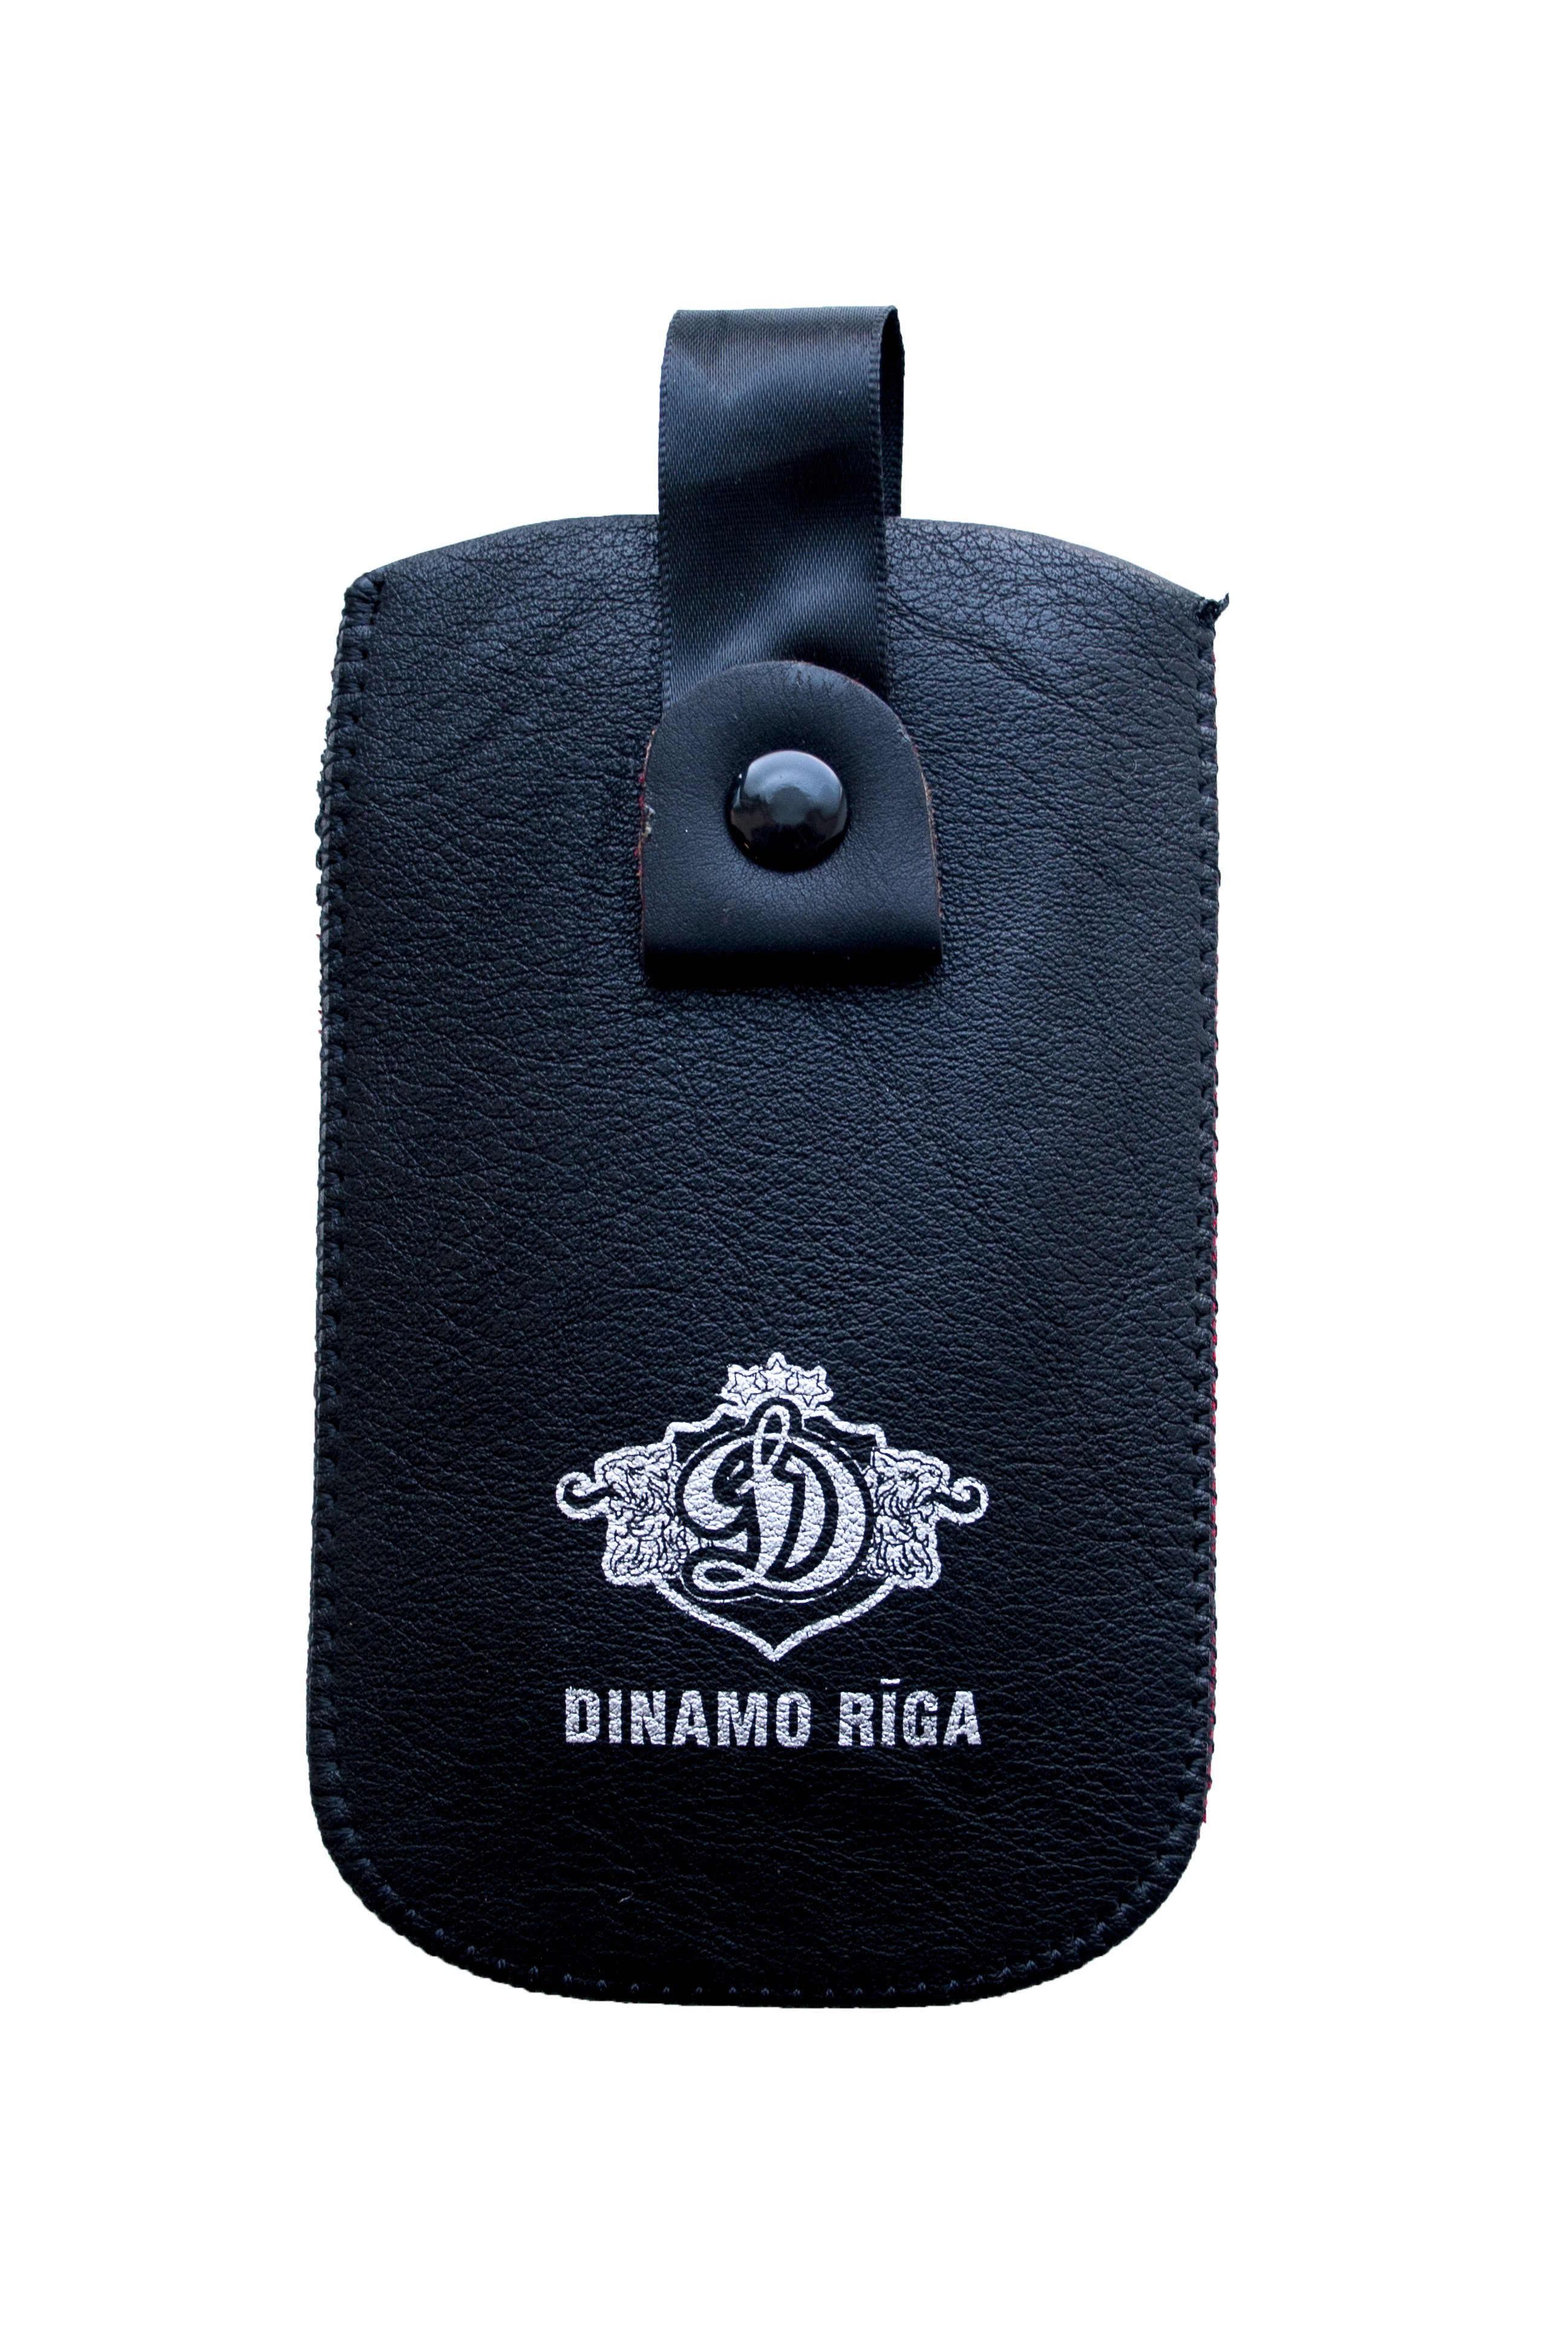 Dinamo Riga Кошелек для Телефона